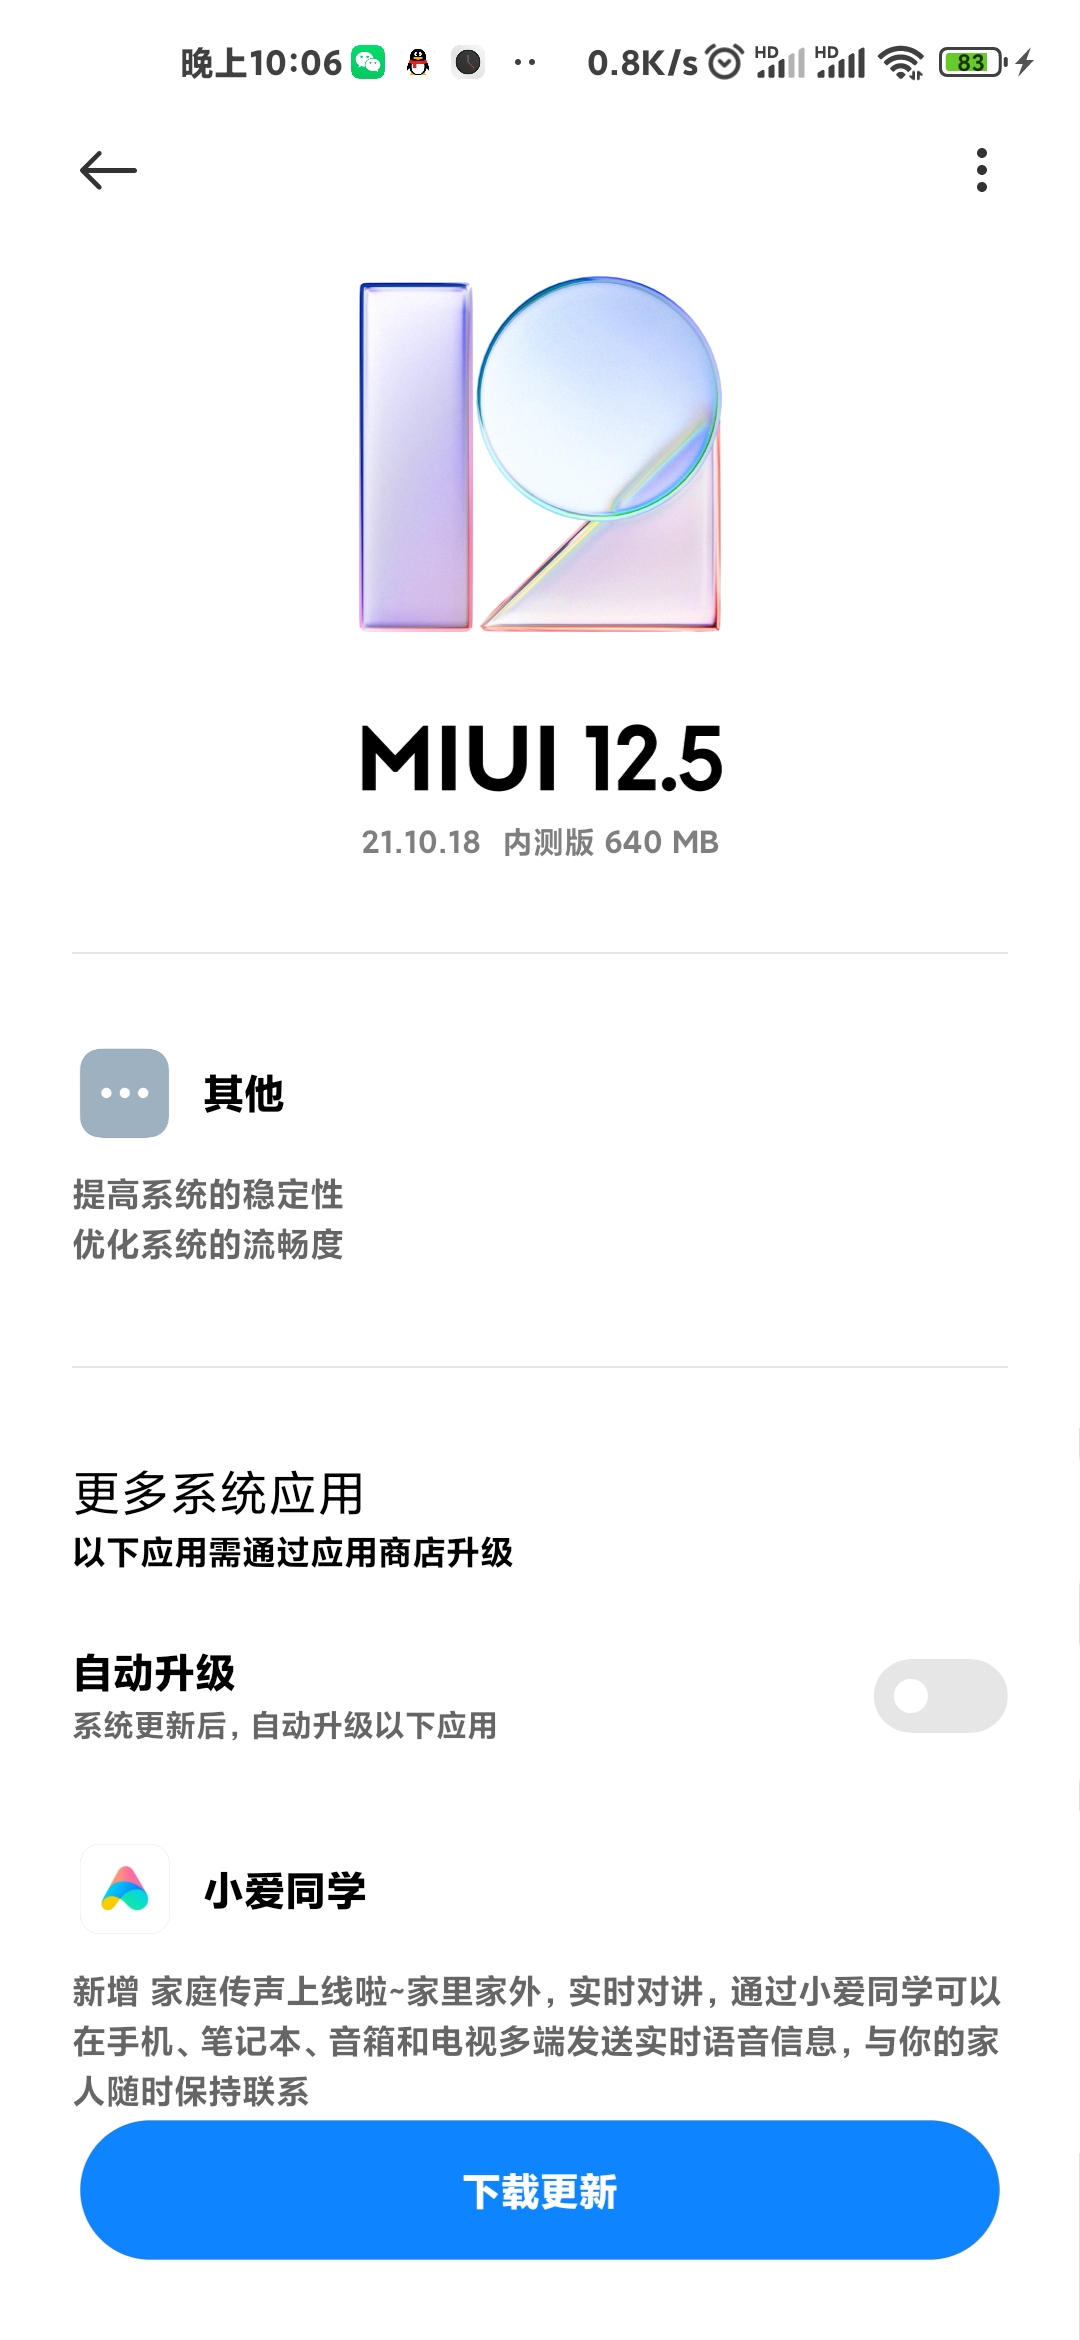 小米MIUI12.5 21.10.18系统官方正式版更新图1: